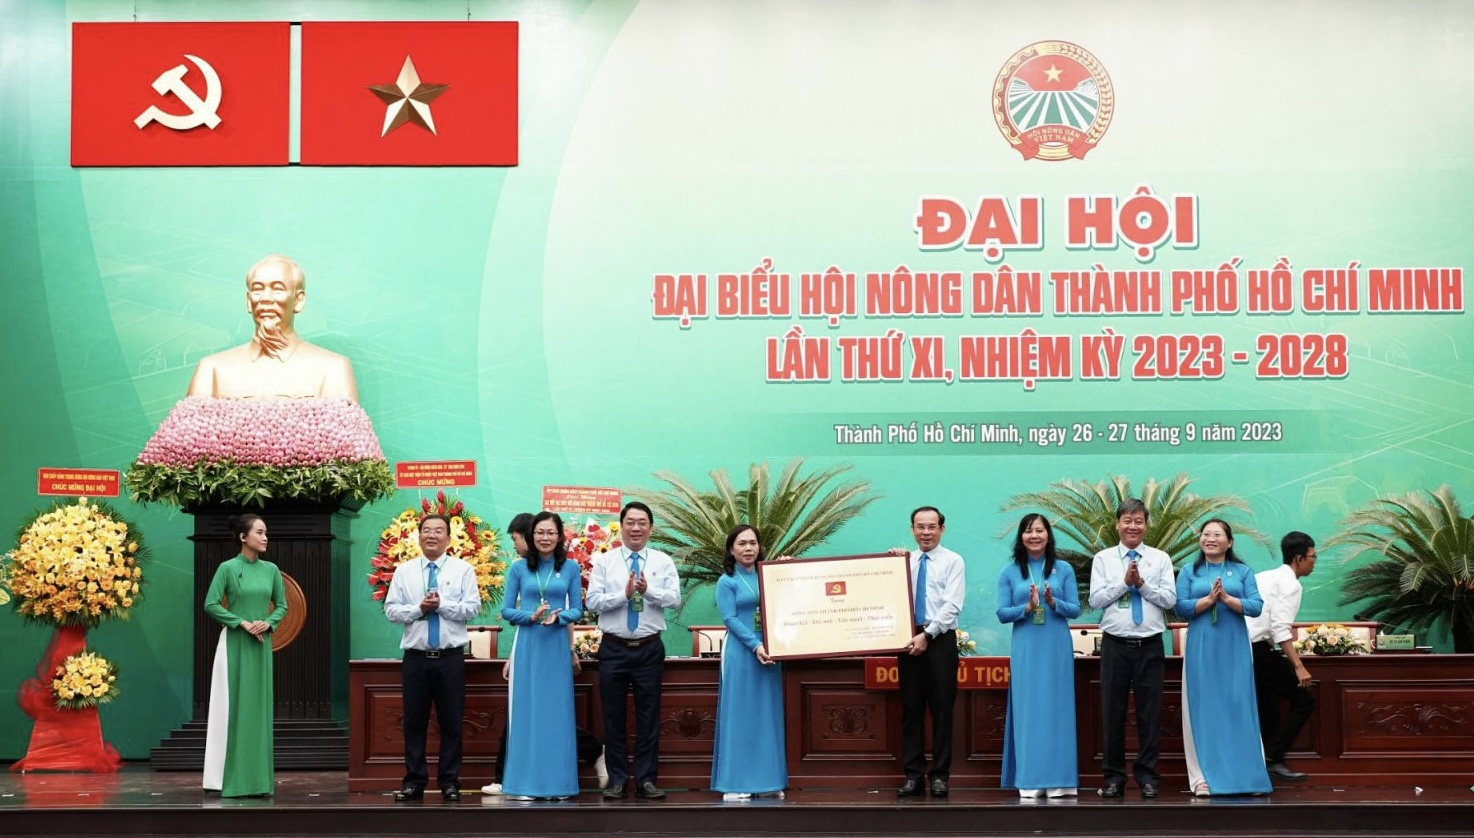 Bí thư Thành ủy TP.HCM Nguyễn Văn Nên tặng bảng đồng cho Hội Nông dân TP.HCM. Ảnh: Nguyễn Thủy.